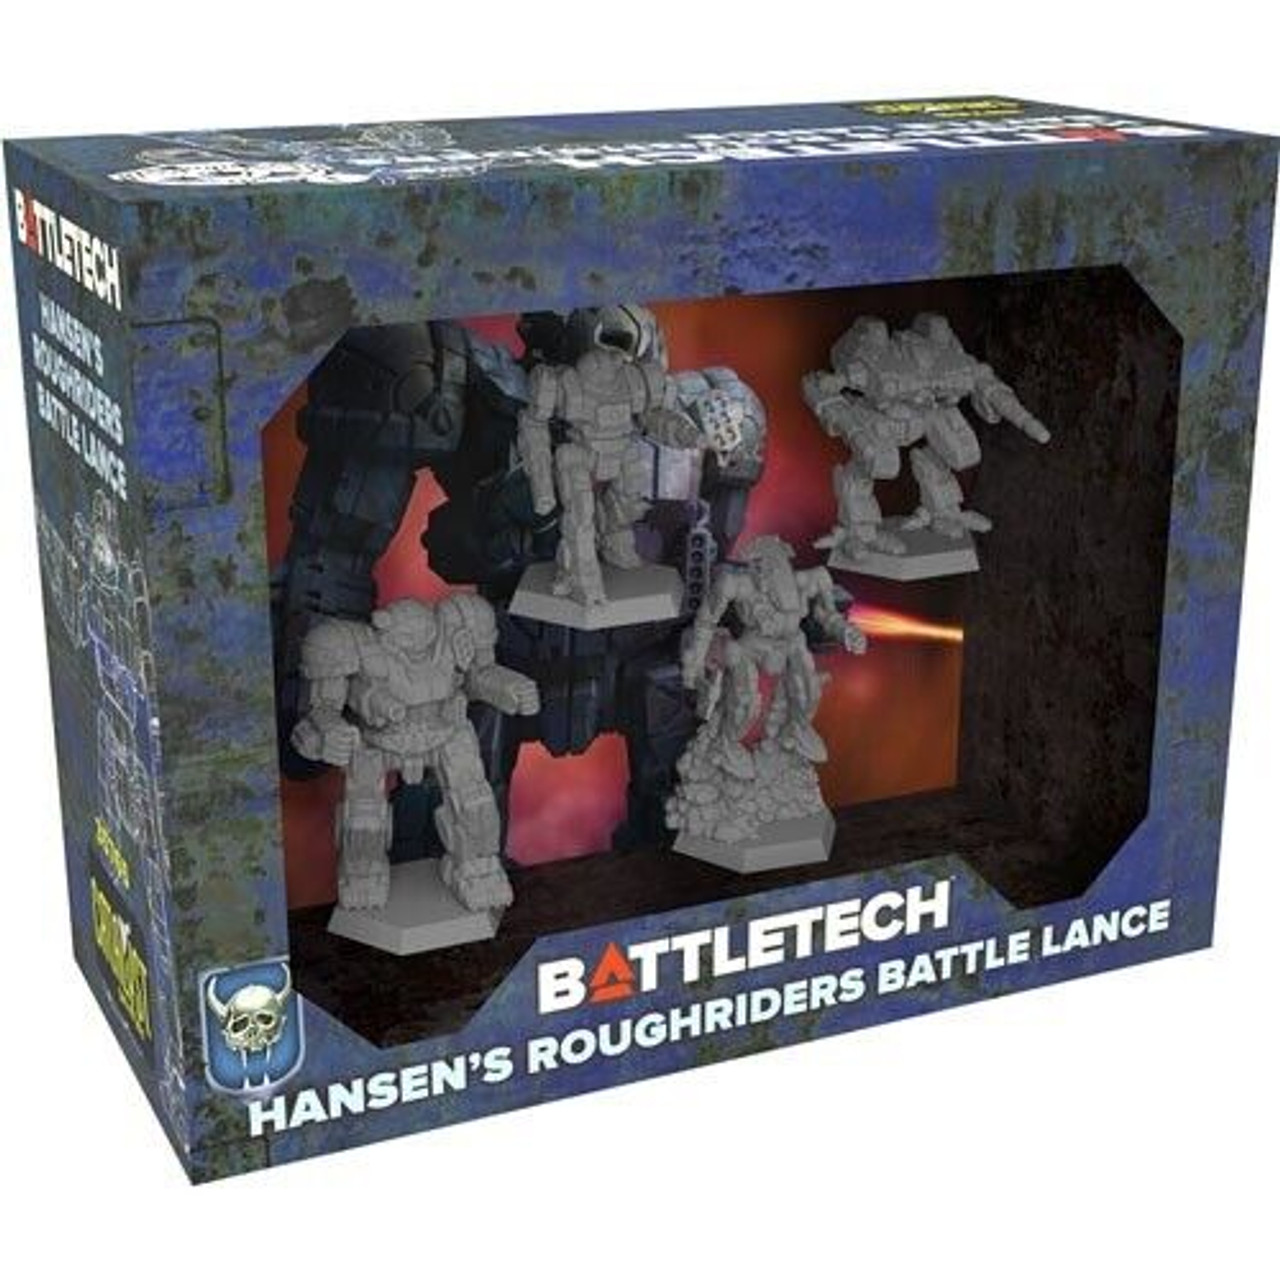 BattleTech: Miniature Force Pack - Hansen's Roughriders Battle